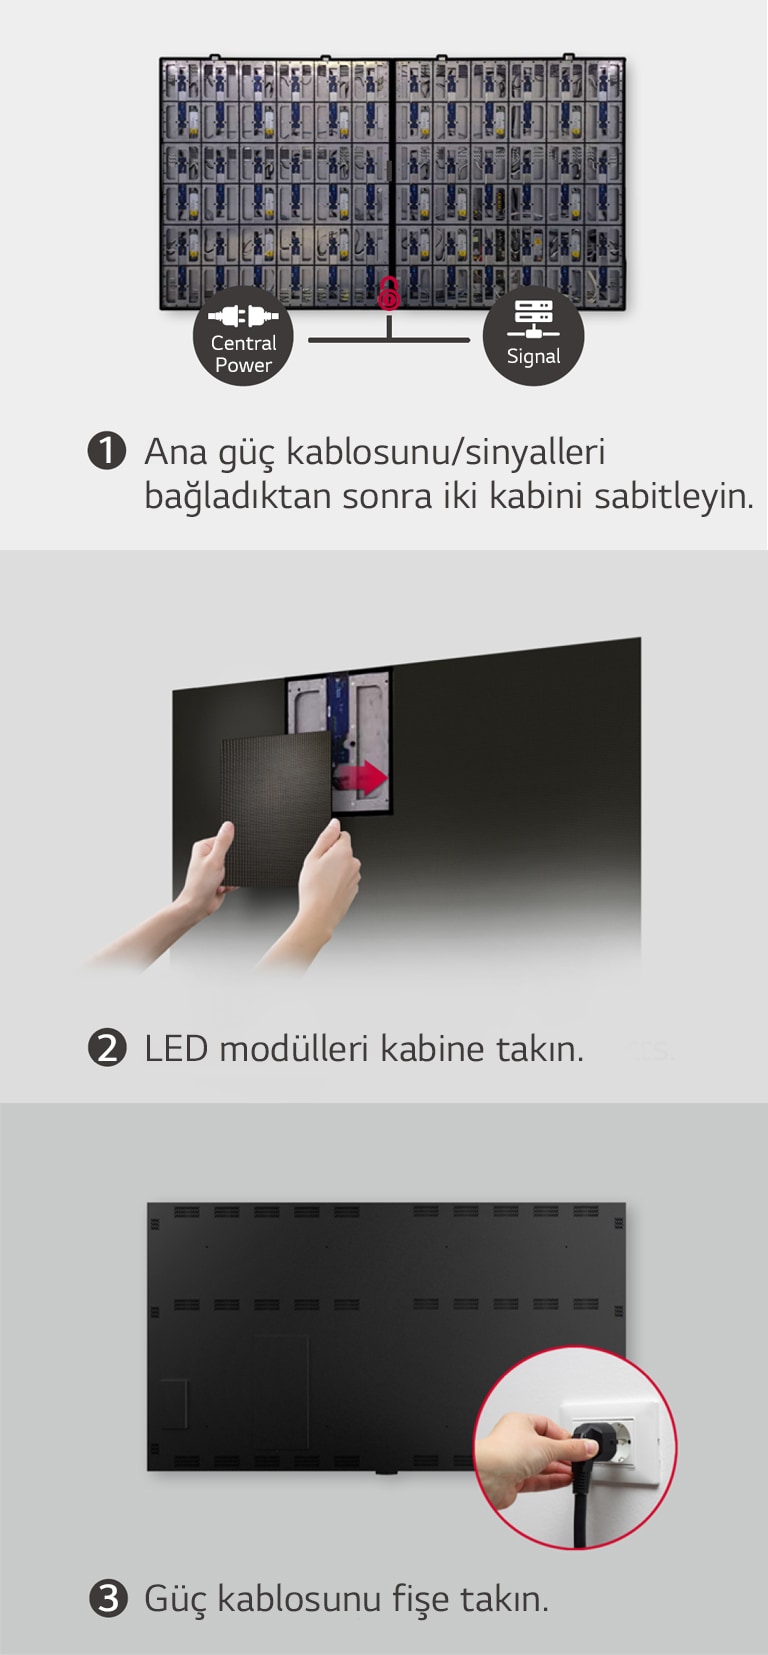 İki kabinin sabitlenmesı, LED modüllerinin takılması ve güç kablosunun bağlanması adımlarının gösterildiği 3 resim.